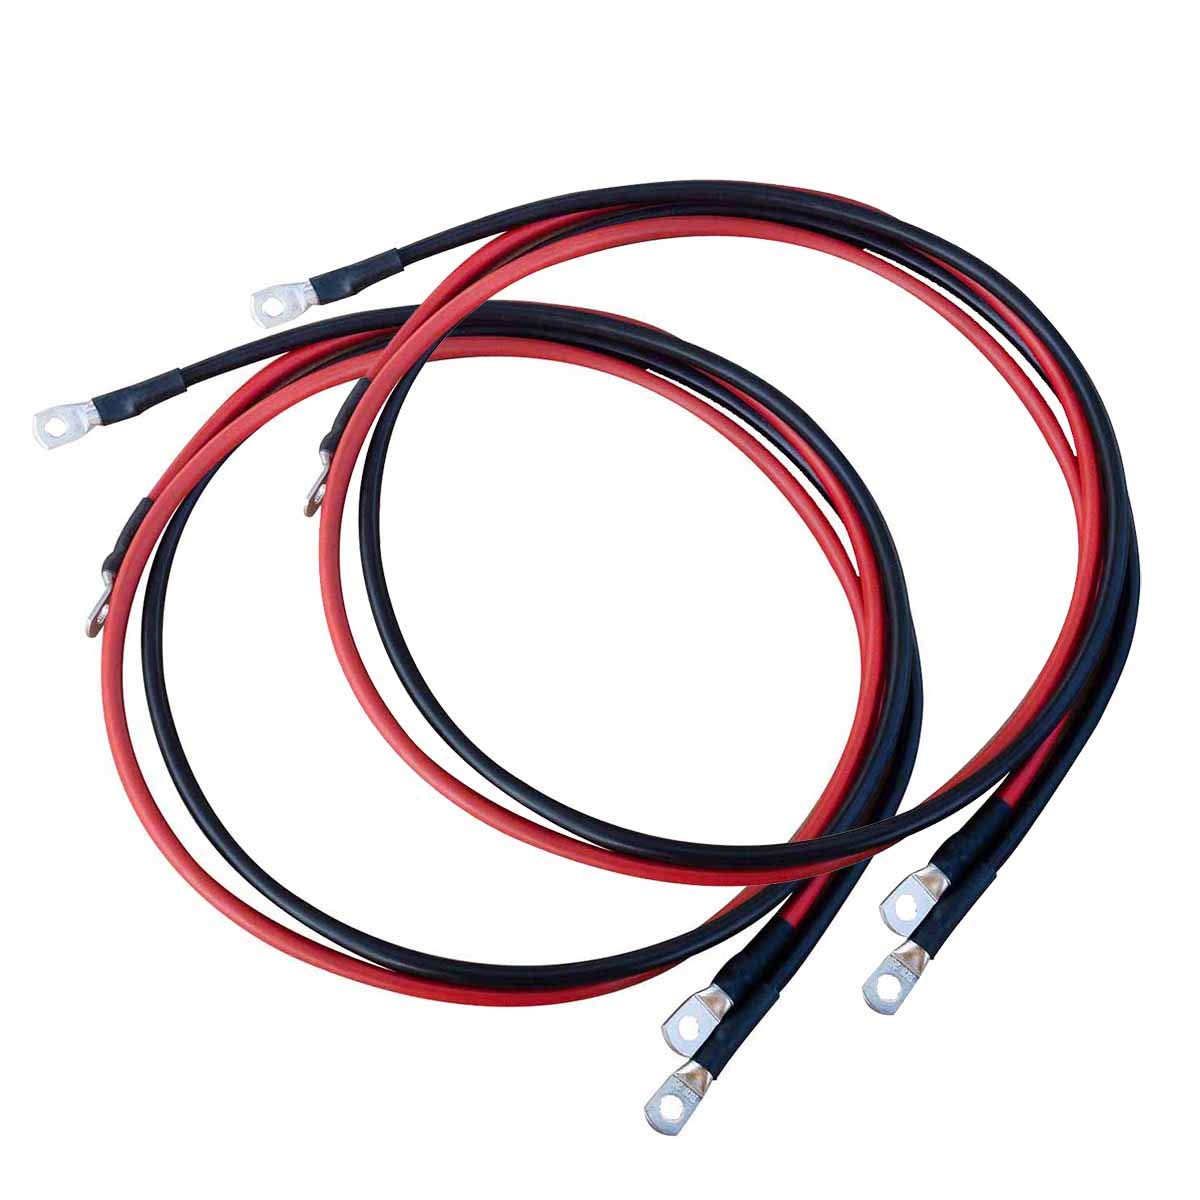 ECTIVE Wechselrichter-Kabel – M8/M8, 1m, rot/schwarz, Kupfer, 25 mm² - Batteriekabel, Kabel-Satz, Kabel für Wechselrichter 3000W mit Ringösen für 12V Batterie, Versorgungsbatterie, Autobatterie von ECTIVE